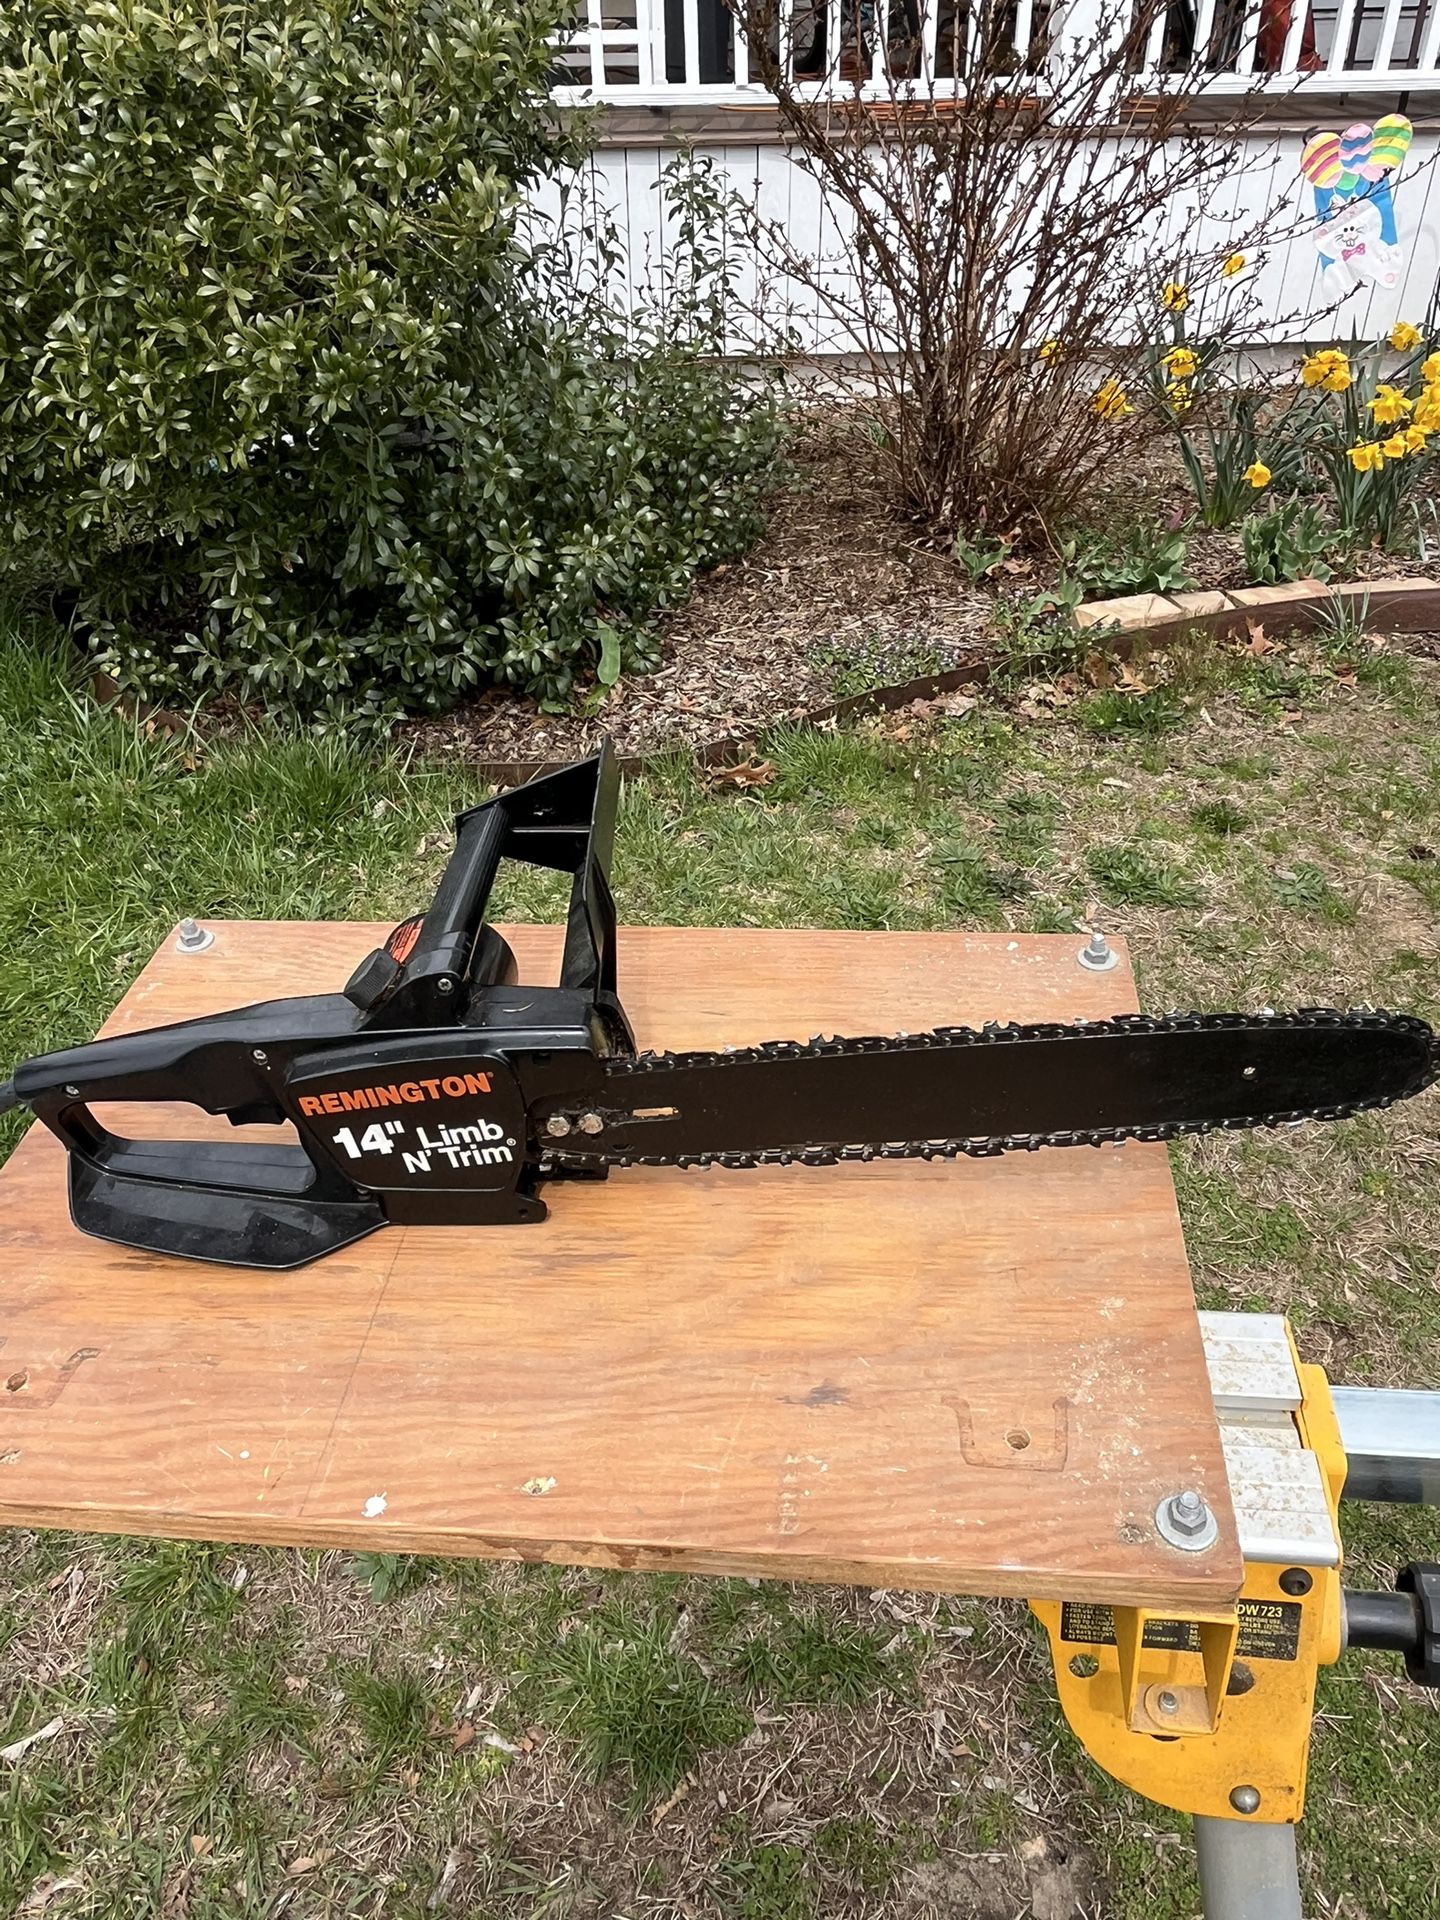 remington 14” limb n trim electric chain saw